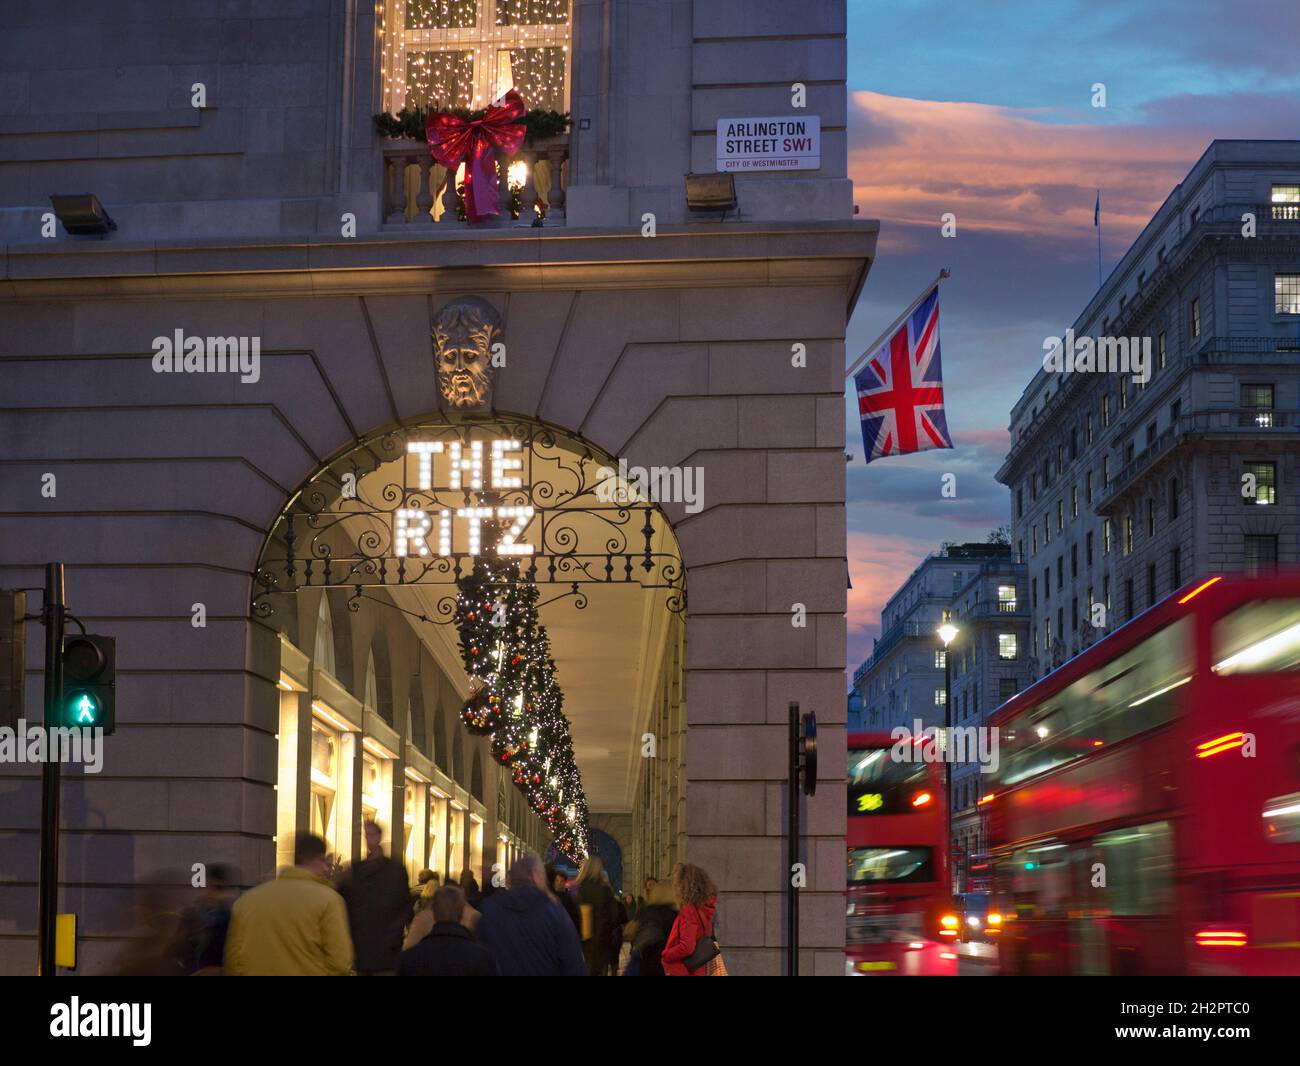 DAS RITZ LONDON WEIHNACHTLICH ÜBERFÜLLT das Ritz Hotel während der Wintersaison, abends beleuchtet das „The Ritz“-Schild, mit der Union Jack-Flagge, Einkäufer und vorbeifahrende rote Londoner Busse Arlington Street Piccadilly London UK Stockfoto